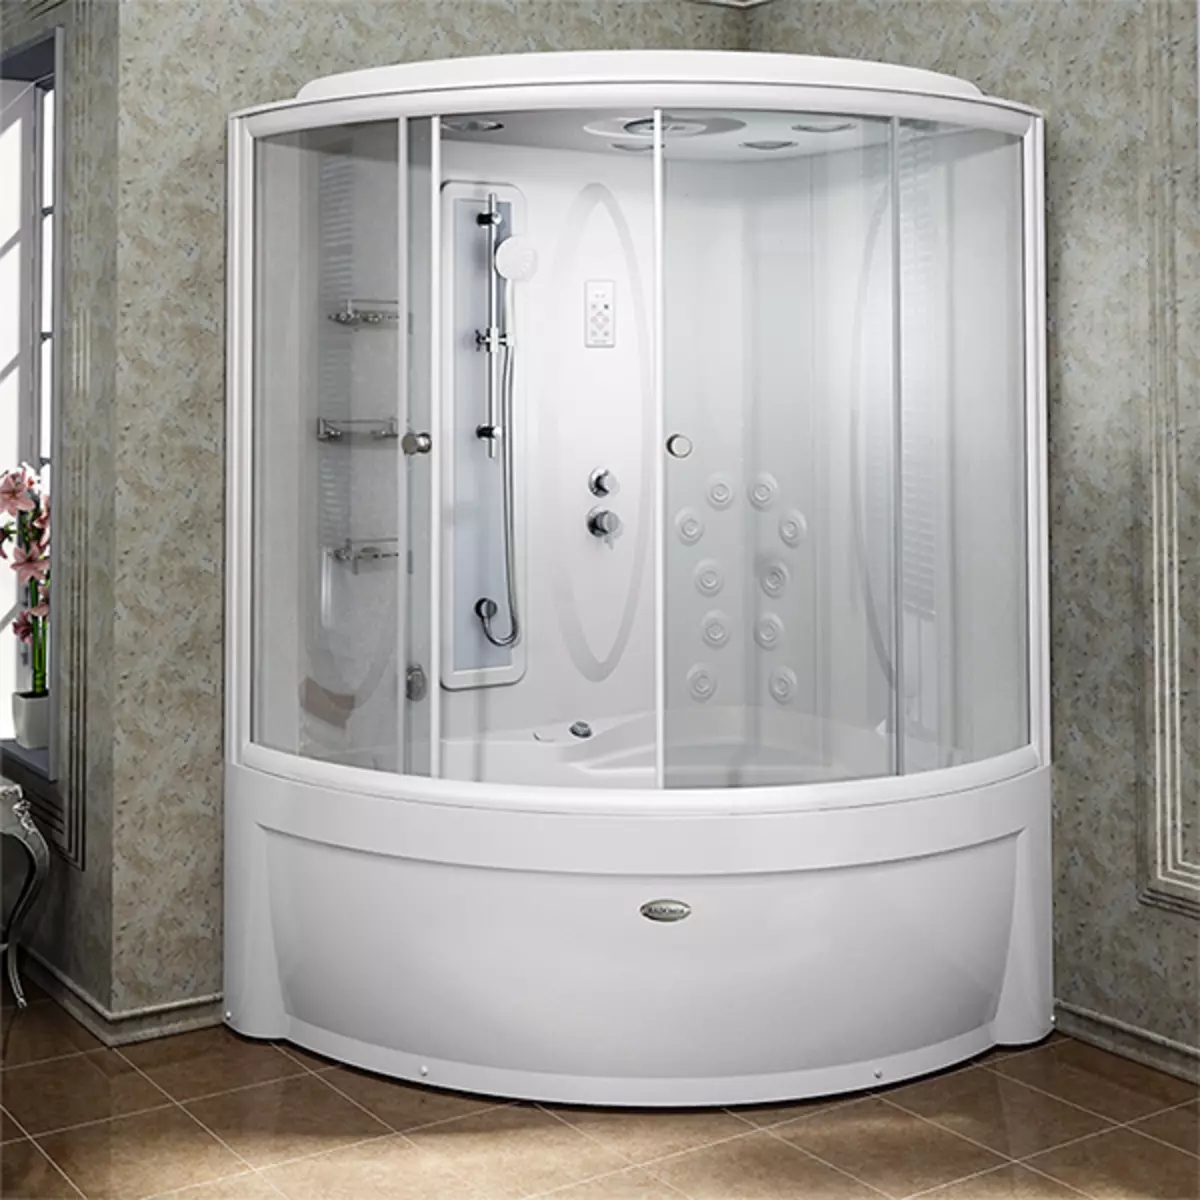 Appollo kabiny prysznicowe: kabiny podłogowe z łazienką i innymi modelami. Ich zalety i wady. Jak wybrać kabinę? 10338_20